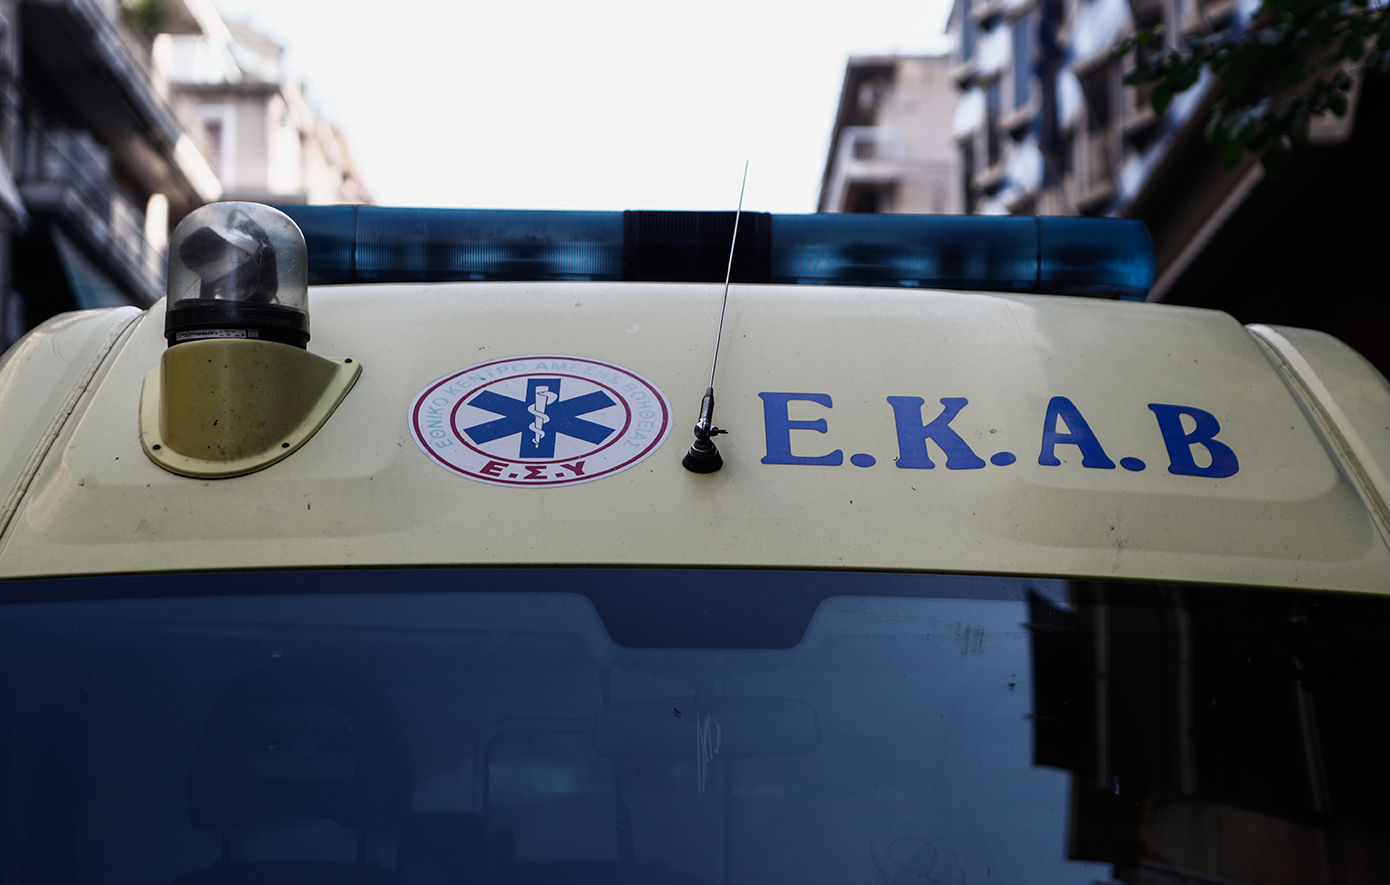 Εξάχρονο παιδί παρασύρθηκε από ηλεκτρικό πατίνι στη Θεσσαλονίκη – Μεταφέρθηκε στο νοσοκομείο